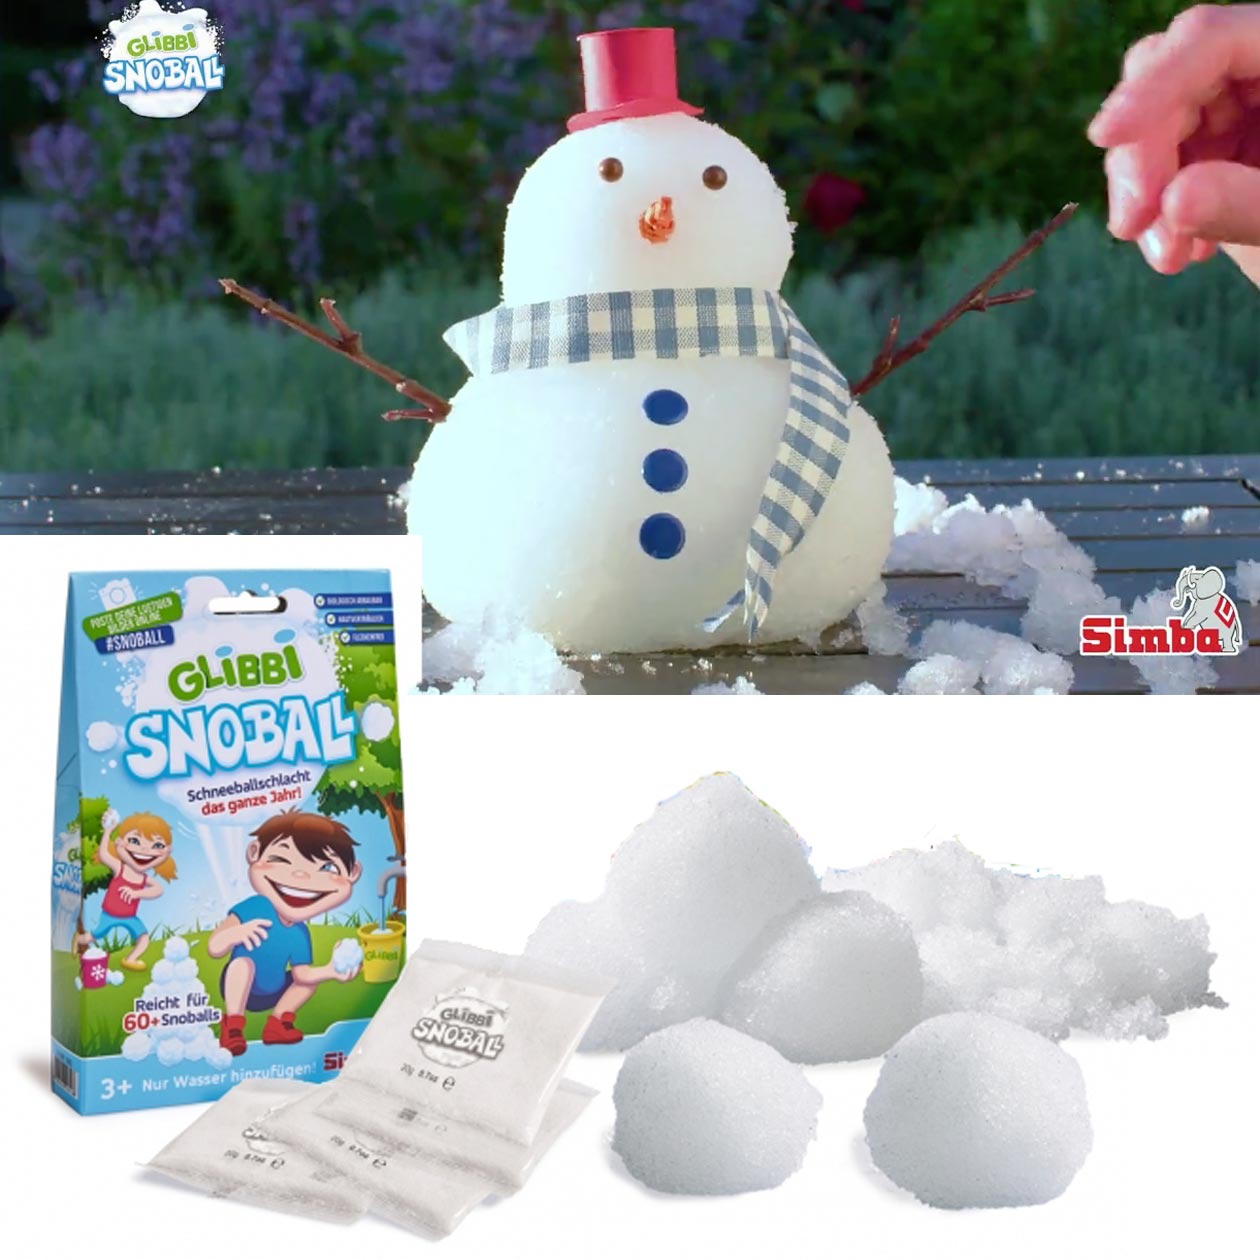 Simba 105953183002 Glibbi Snowball Outdoor-Spiel Schneekugeln 4 Beutel à 20 g p 